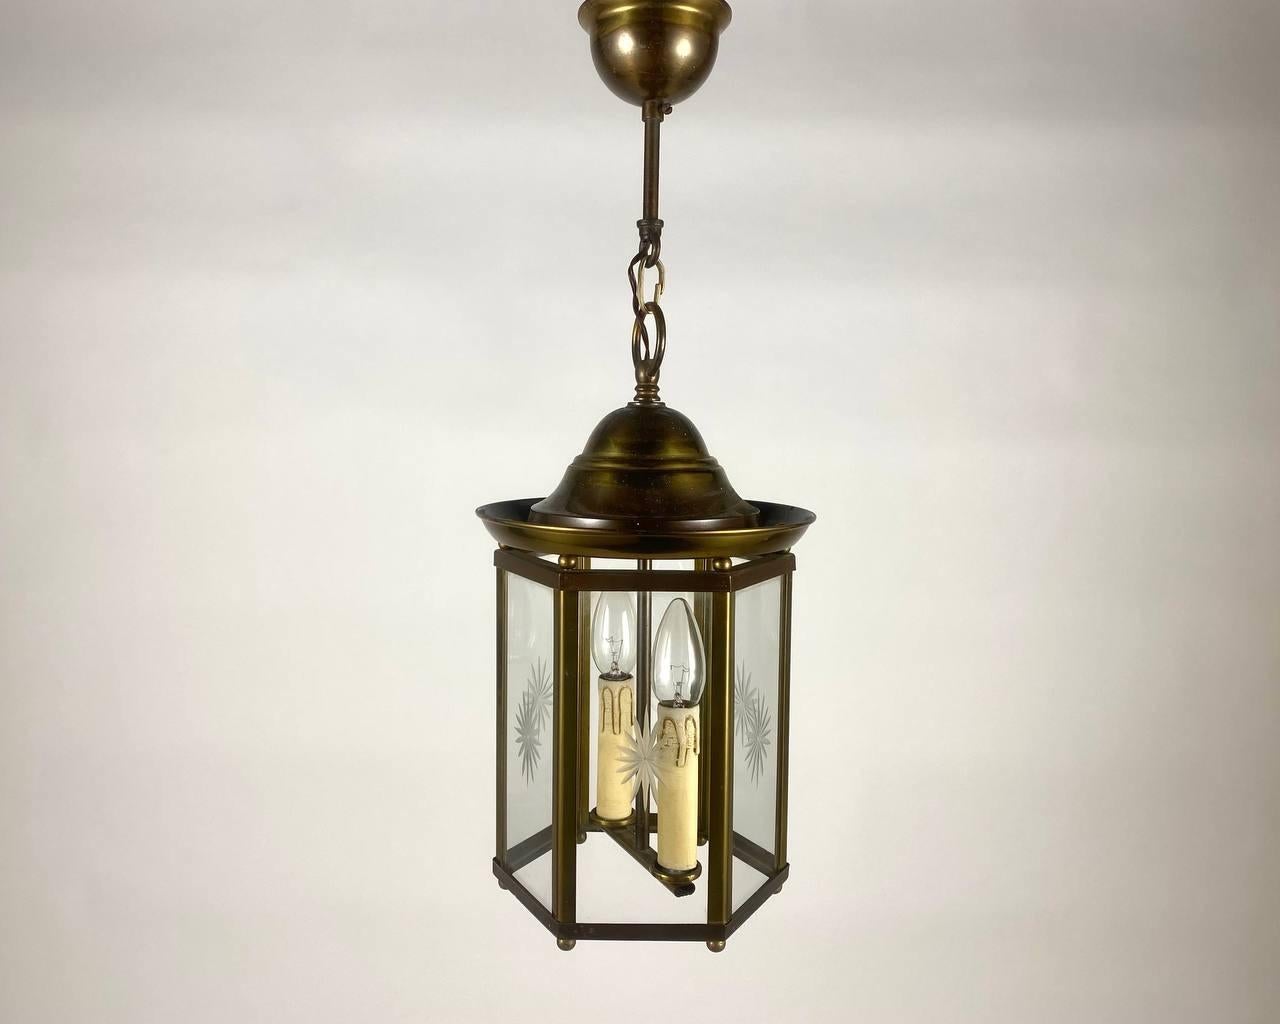 Lustre artisanal vintage - lanterne pour deux points lumineux fabriqué dans les années 1980. 

La lanterne de plafond est une combinaison étonnante de la garantie du fabricant et du design du luminaire.

L'abat-jour hexagonal est livré avec les